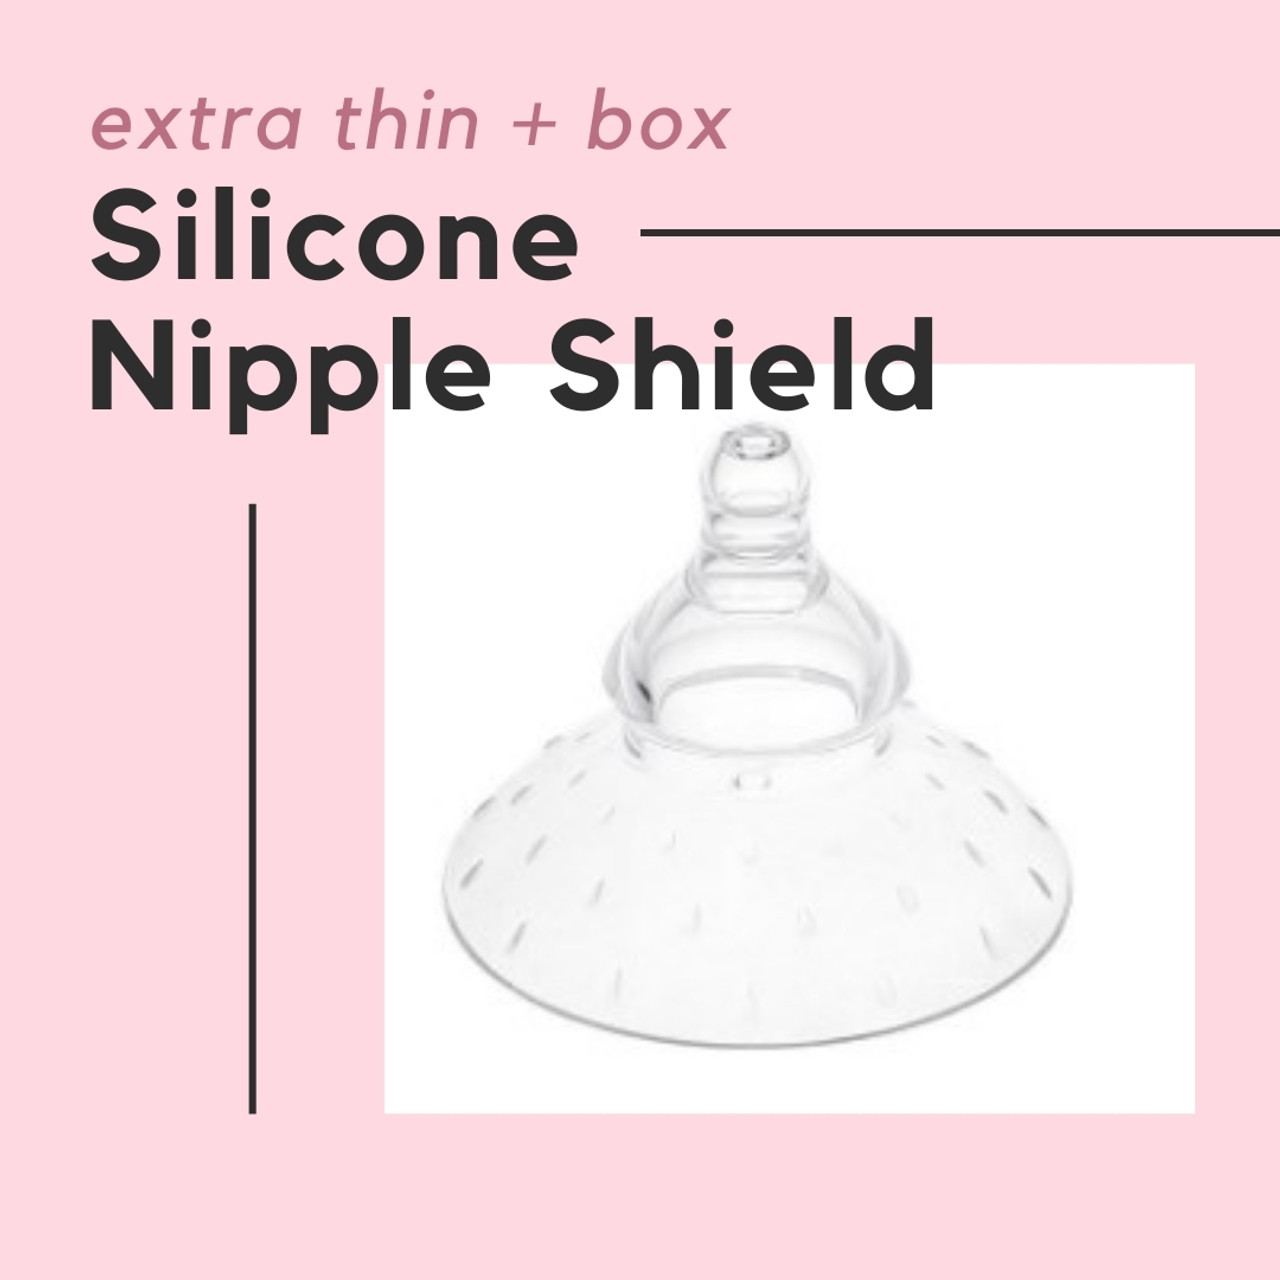 Haakaa Breastfeeding Nipple Shield